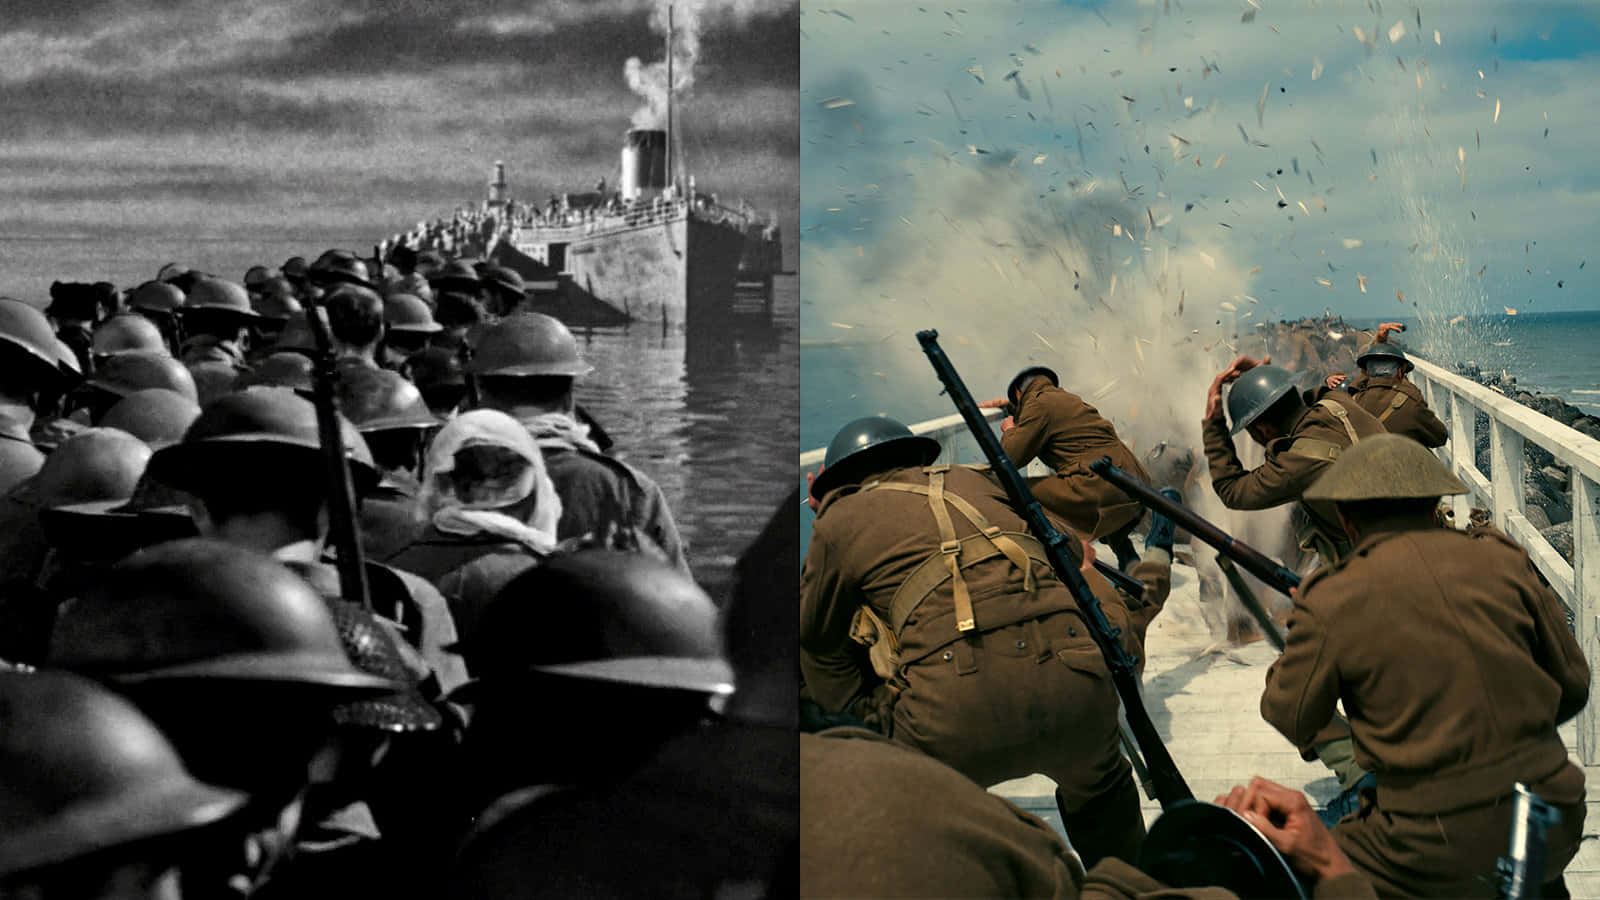 Heroic Dunkirk Evacuation Under Fiery Skies Wallpaper